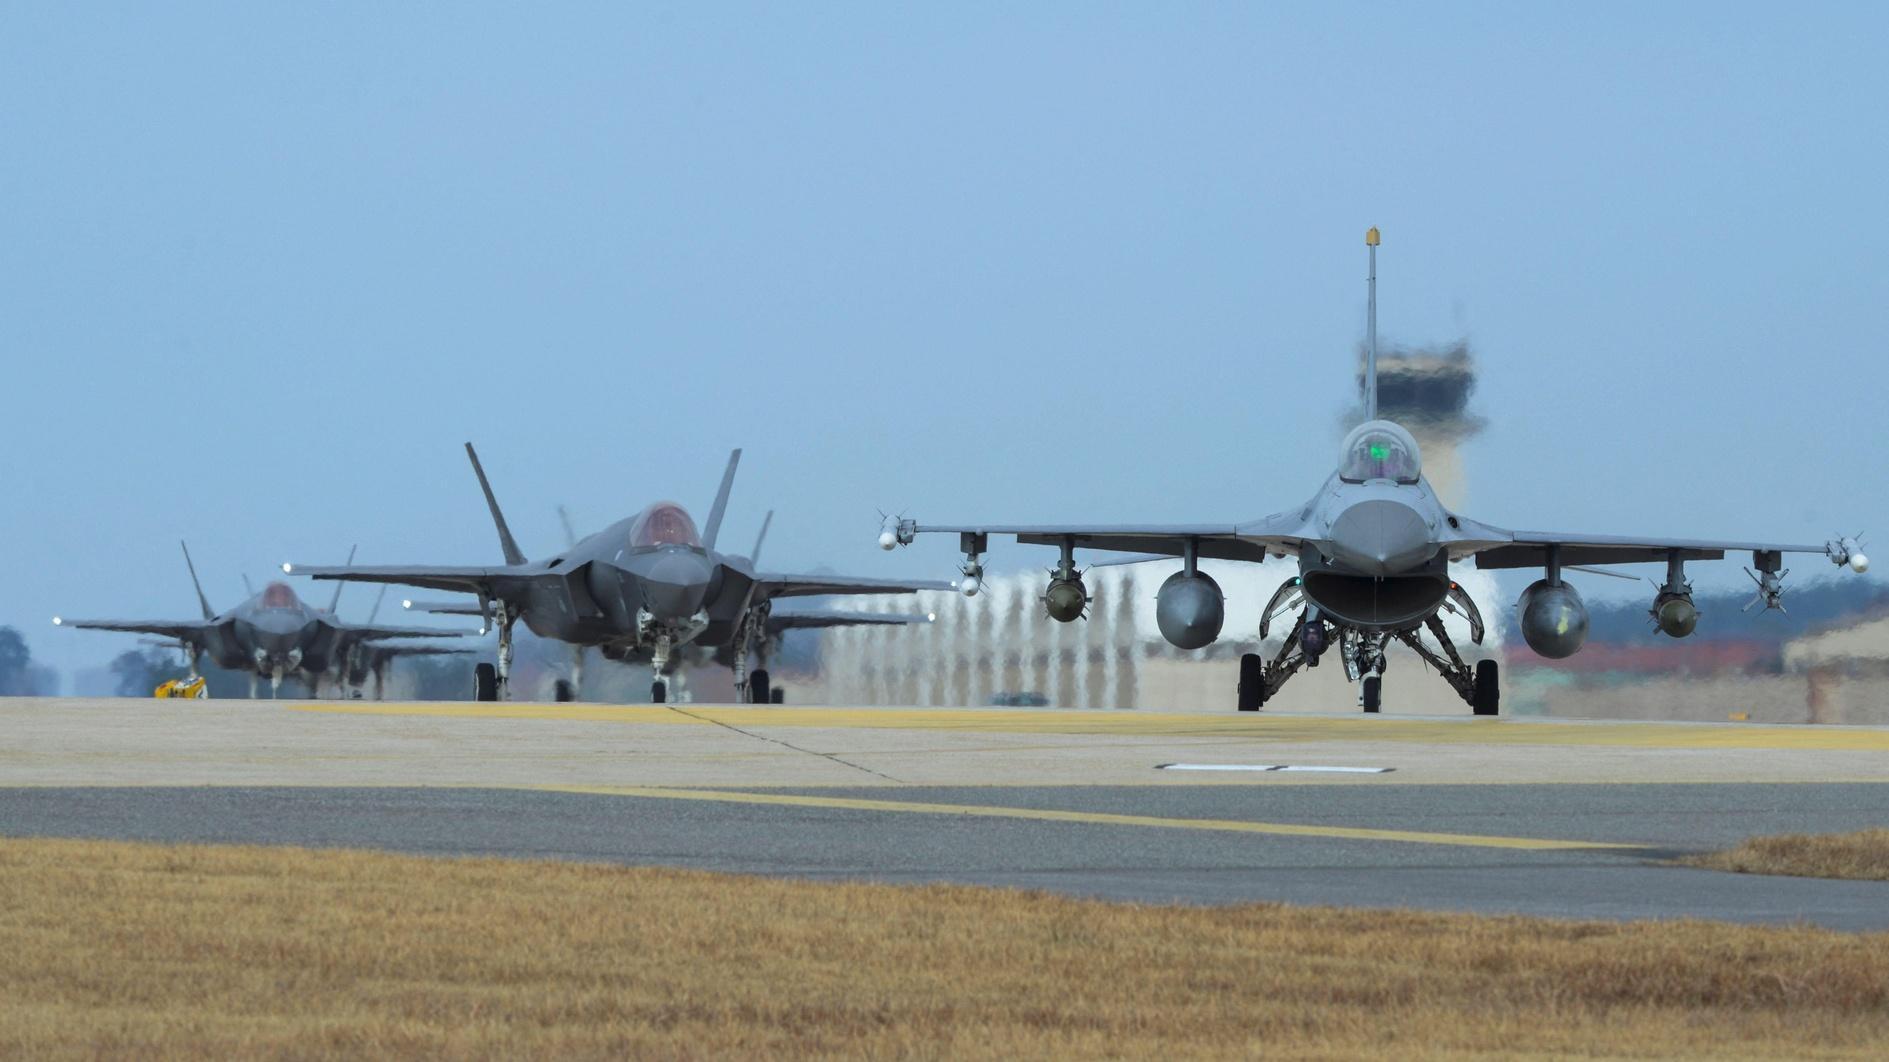 Verkoop van Amerikaanse F-16 aan Türkiye is niet onderworpen aan enige voorwaarden: Bronnen